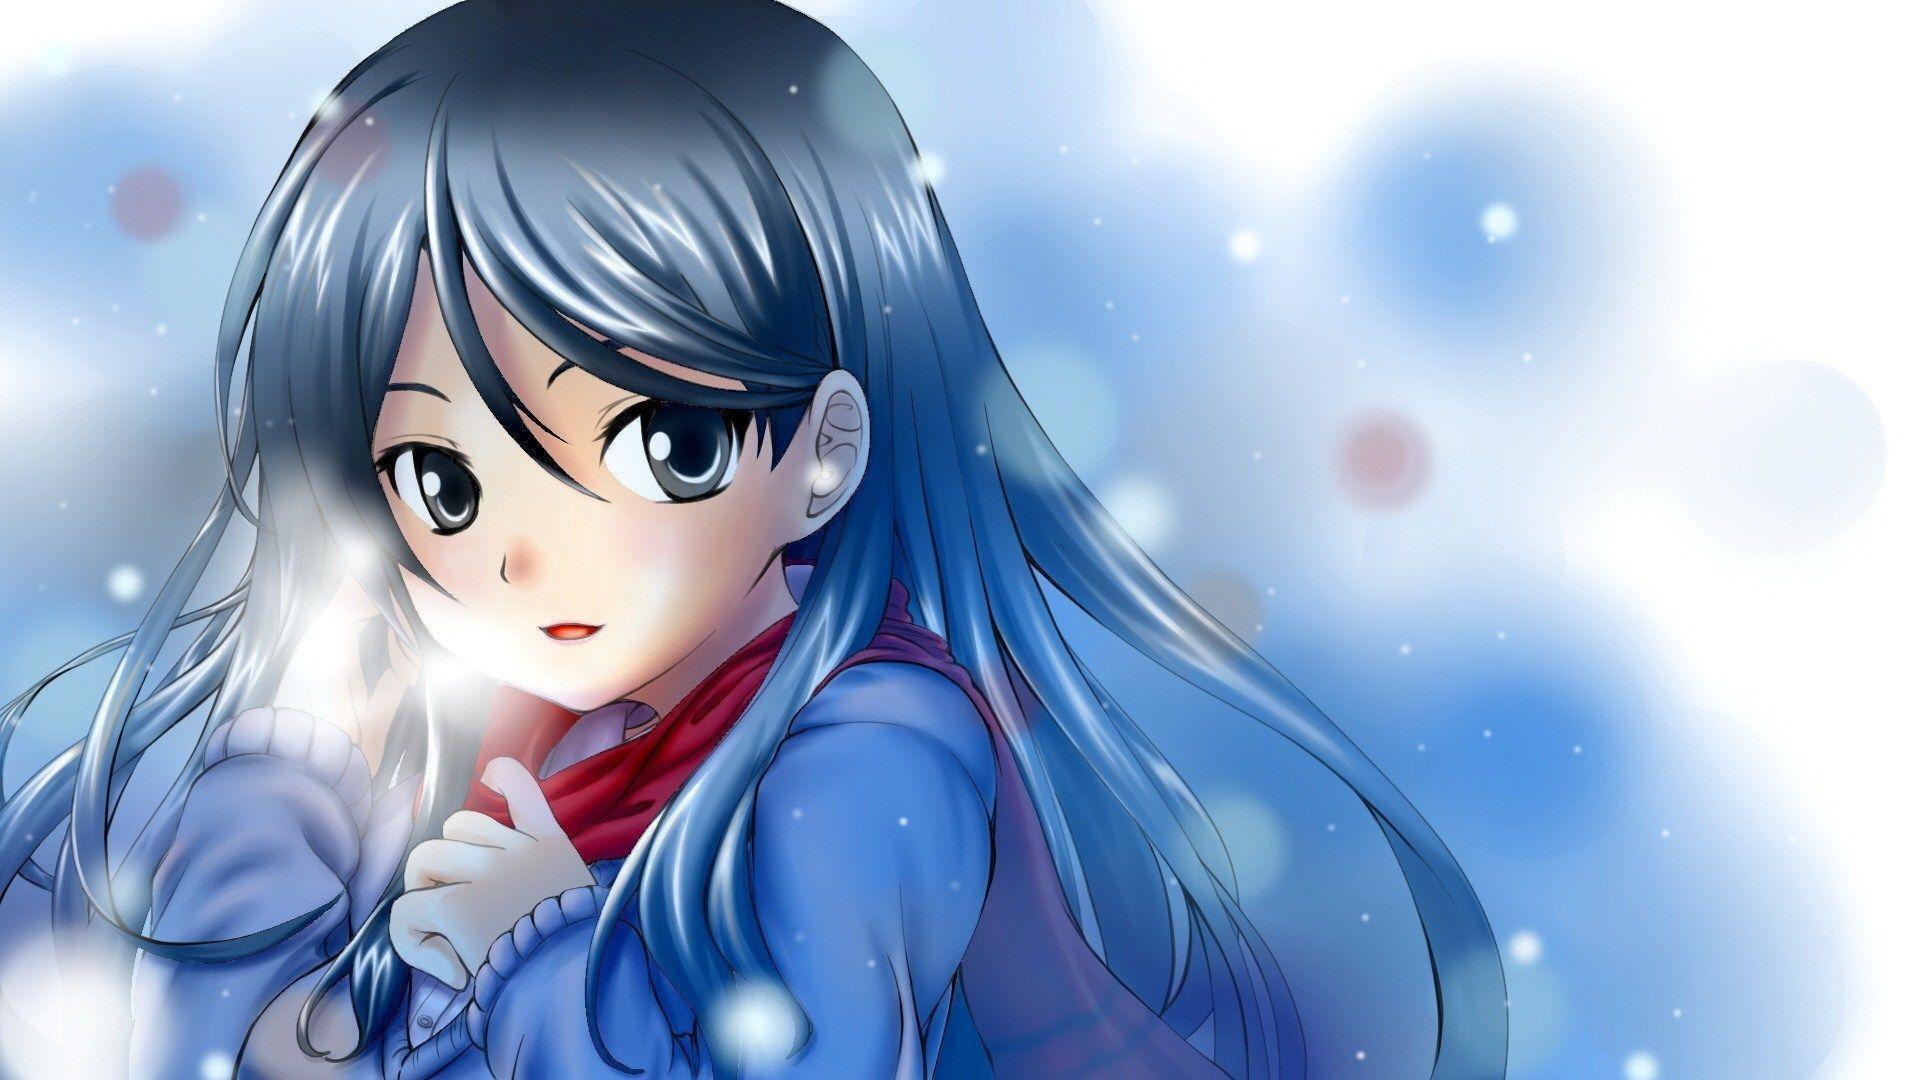 Anime Girl Snow Winter Hd Wallpaper Background Uhd 2k 4k 5k 2015